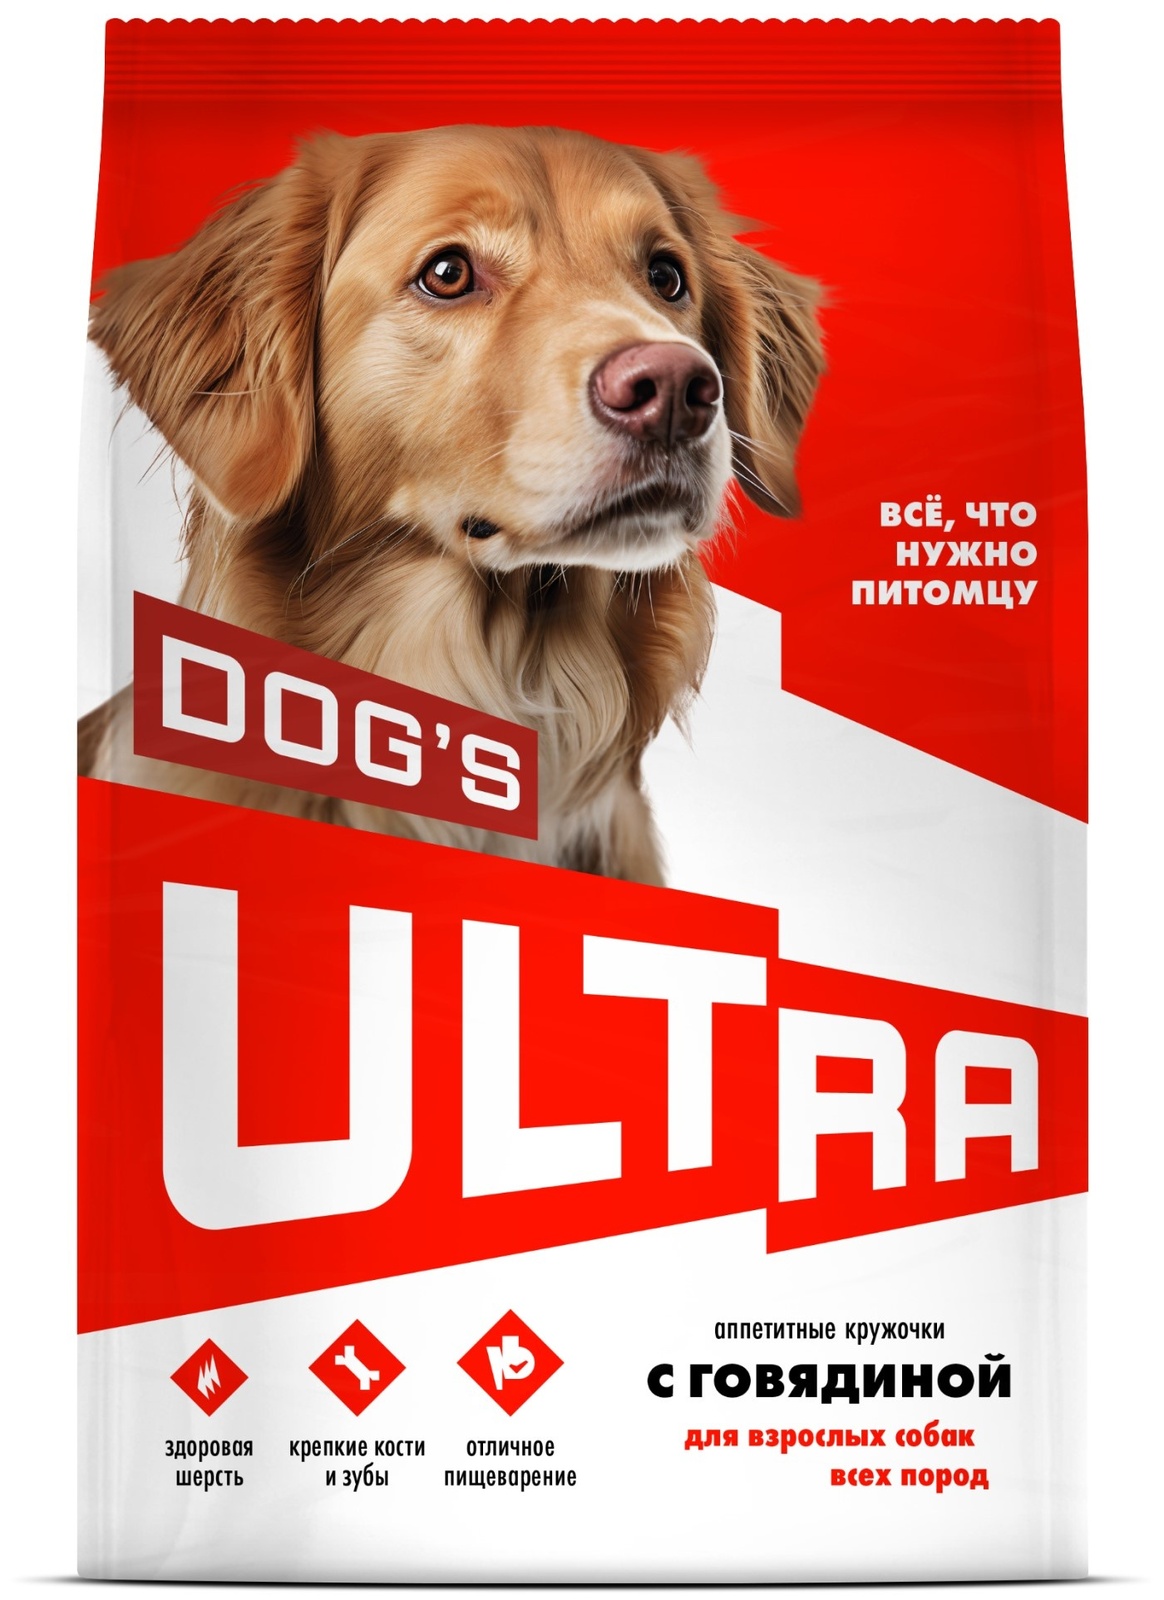 ULTRA ULTRA аппетитные кружочки с говядиной для взрослых собак всех пород (12 кг) ultra ultra аппетитные кружочки 3 вида мяса для взрослых собак всех пород 12 кг